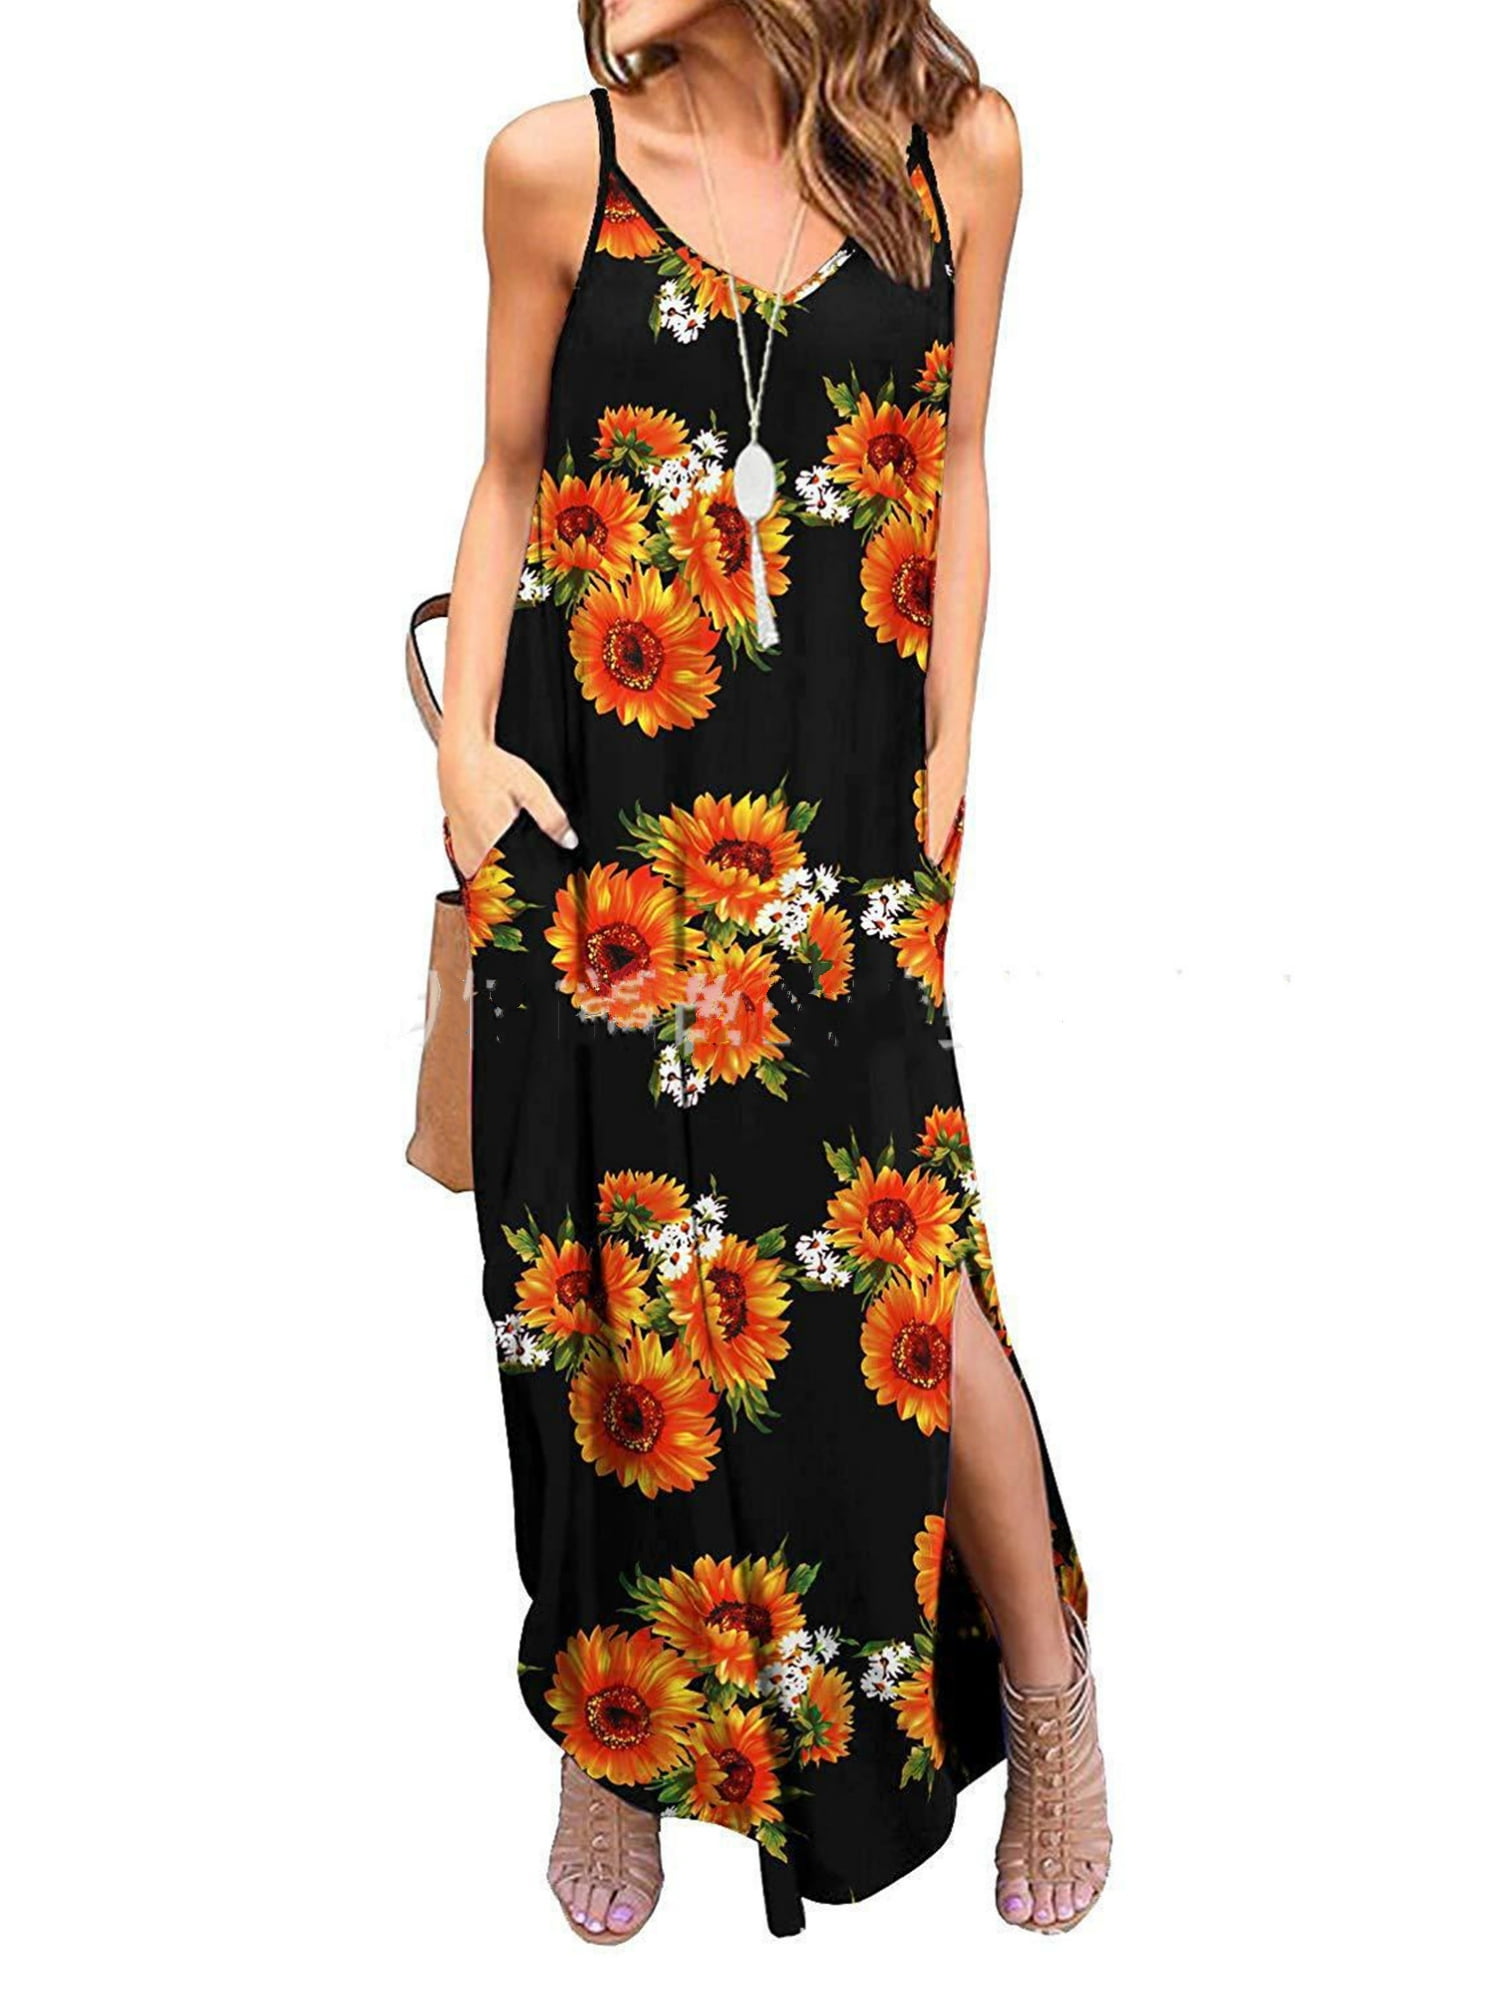 Womens Floral Maxi Dress Casual Summer Dress V Neck Long Dress Side Split Hem Beach Dress with Sleeves A Line Dress 